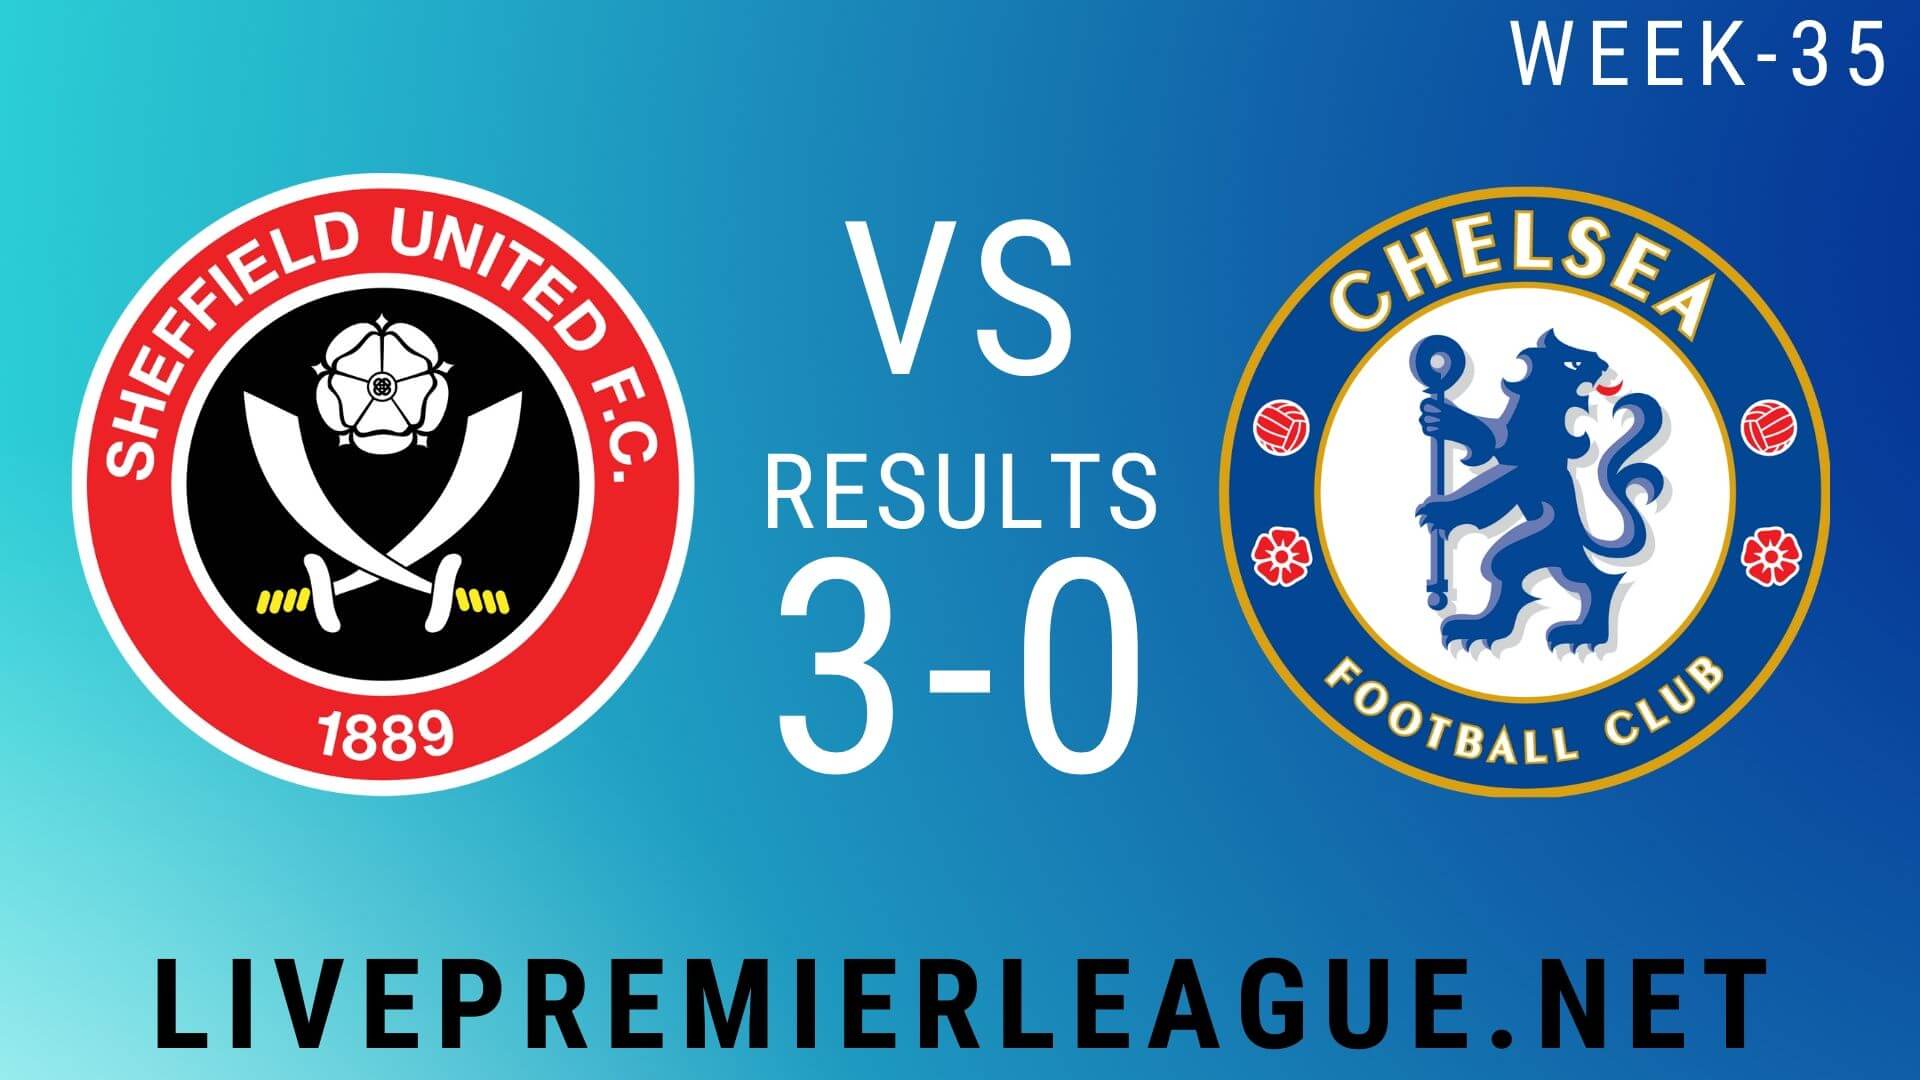 Sheffield United Vs Chelsea | Week 35 Result 2020